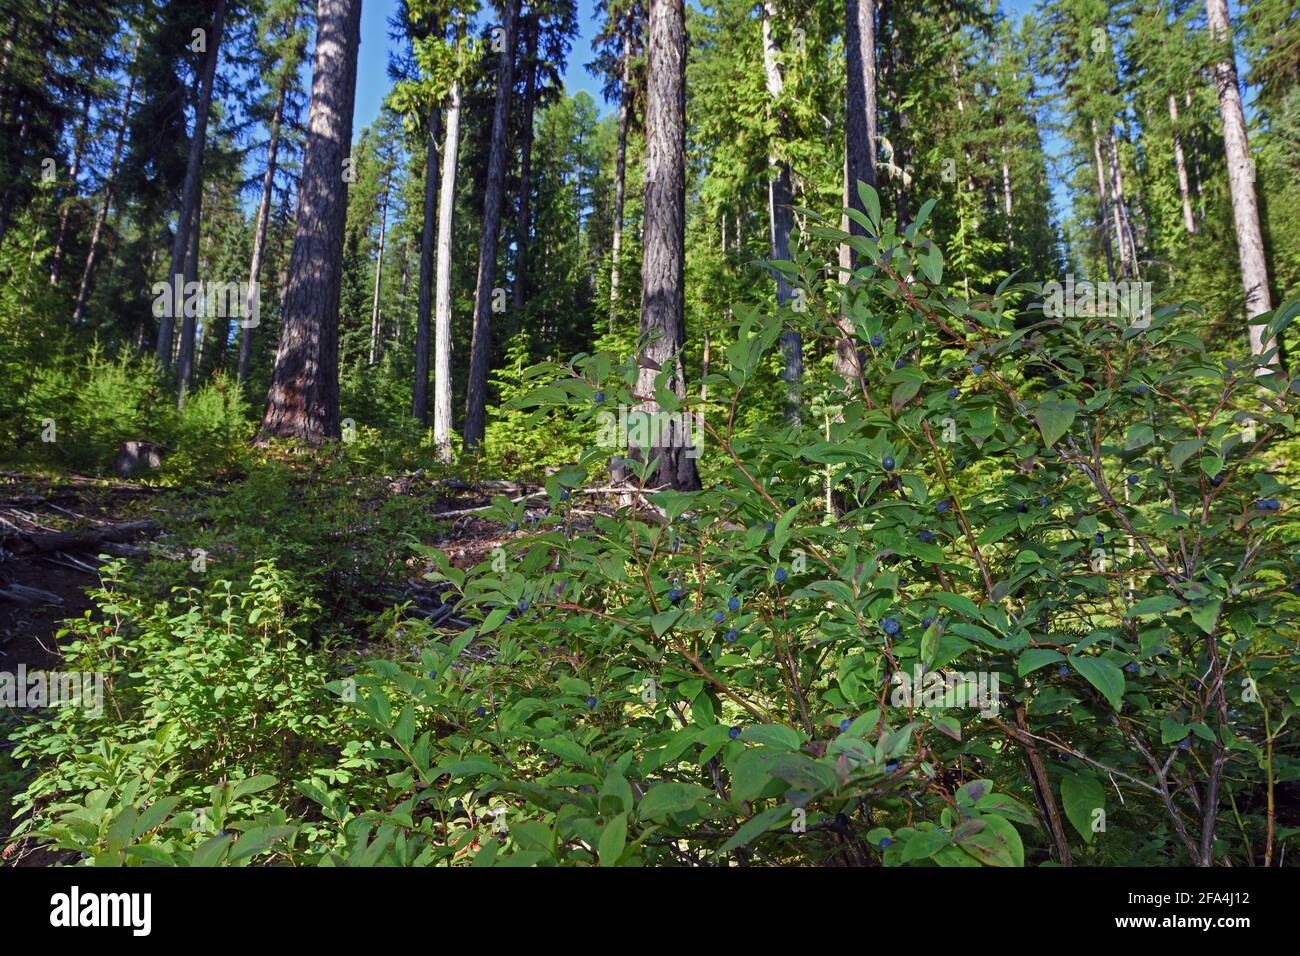 huckleberry wächst in einem gemischten Nadelwald etwa 13 Jahre nach der Ausdünnung. Yaak Valley, nordwestlich von Montana. Stockfoto